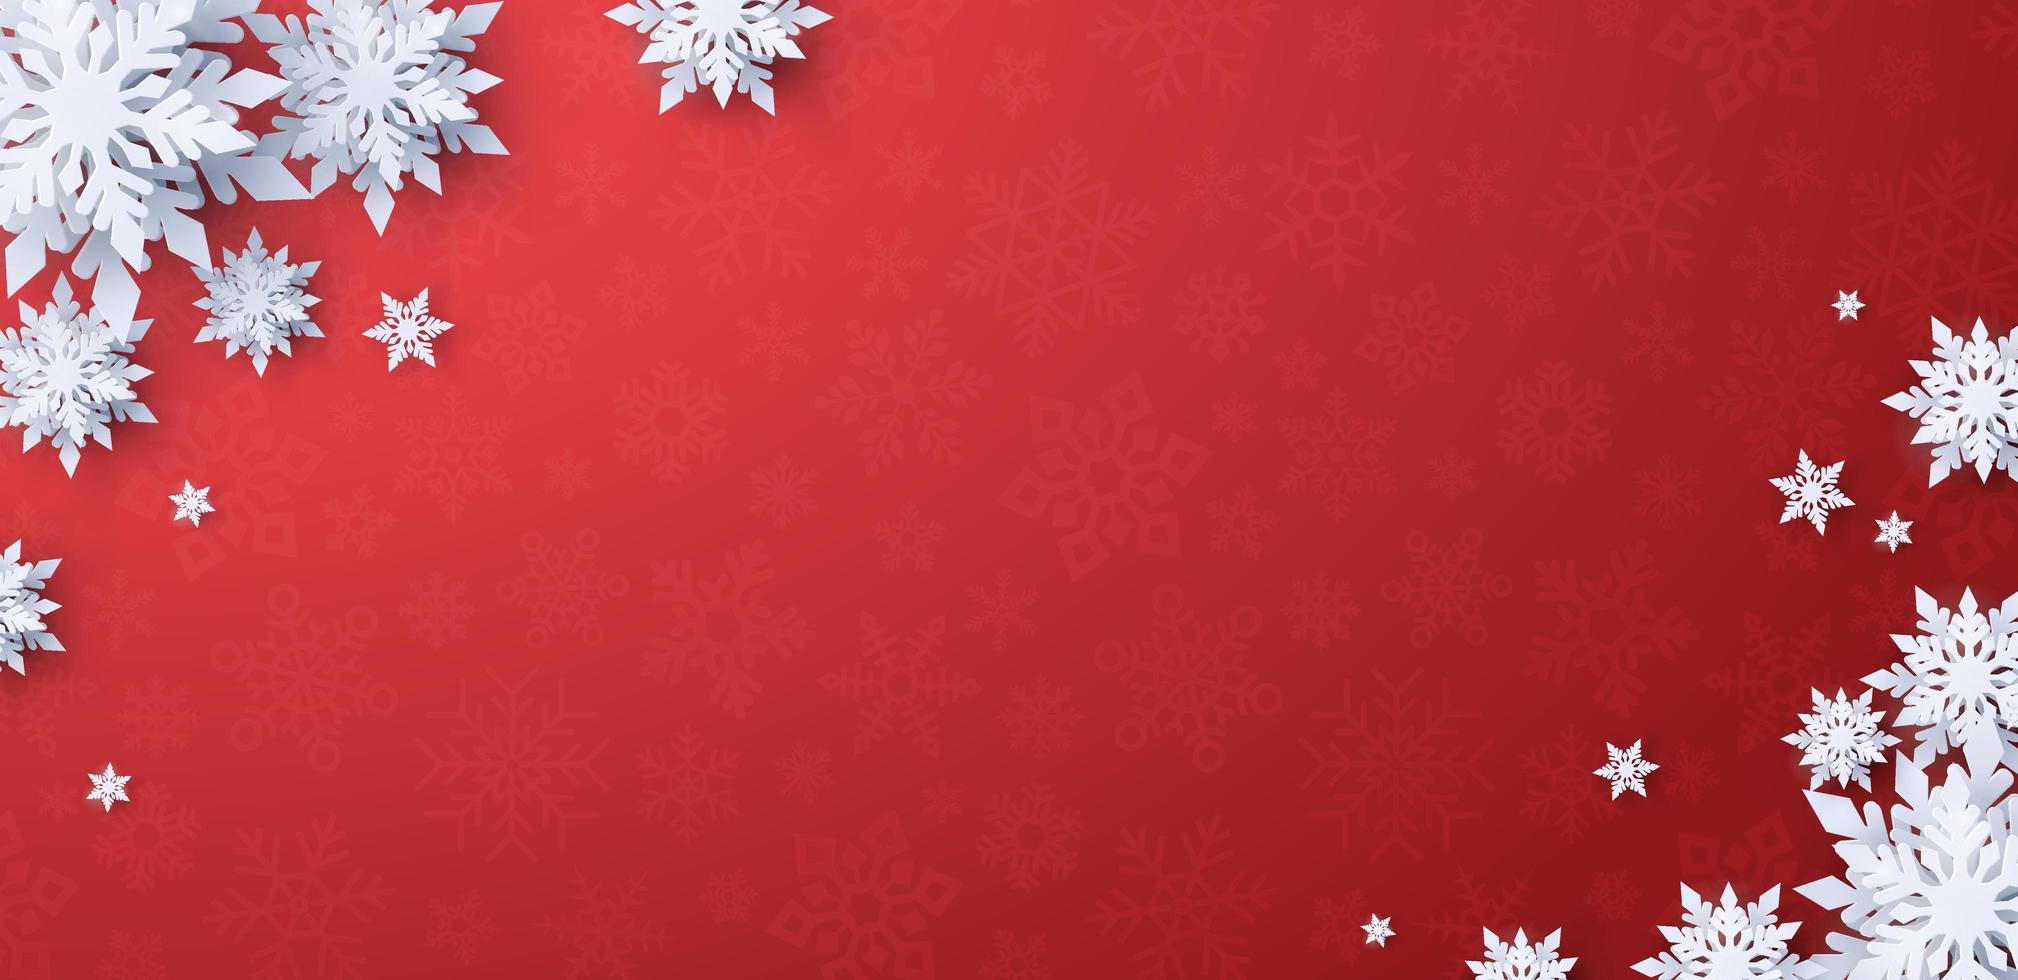 Weihnachtsroter Fahnenhintergrund mit Schneeflocken vektor